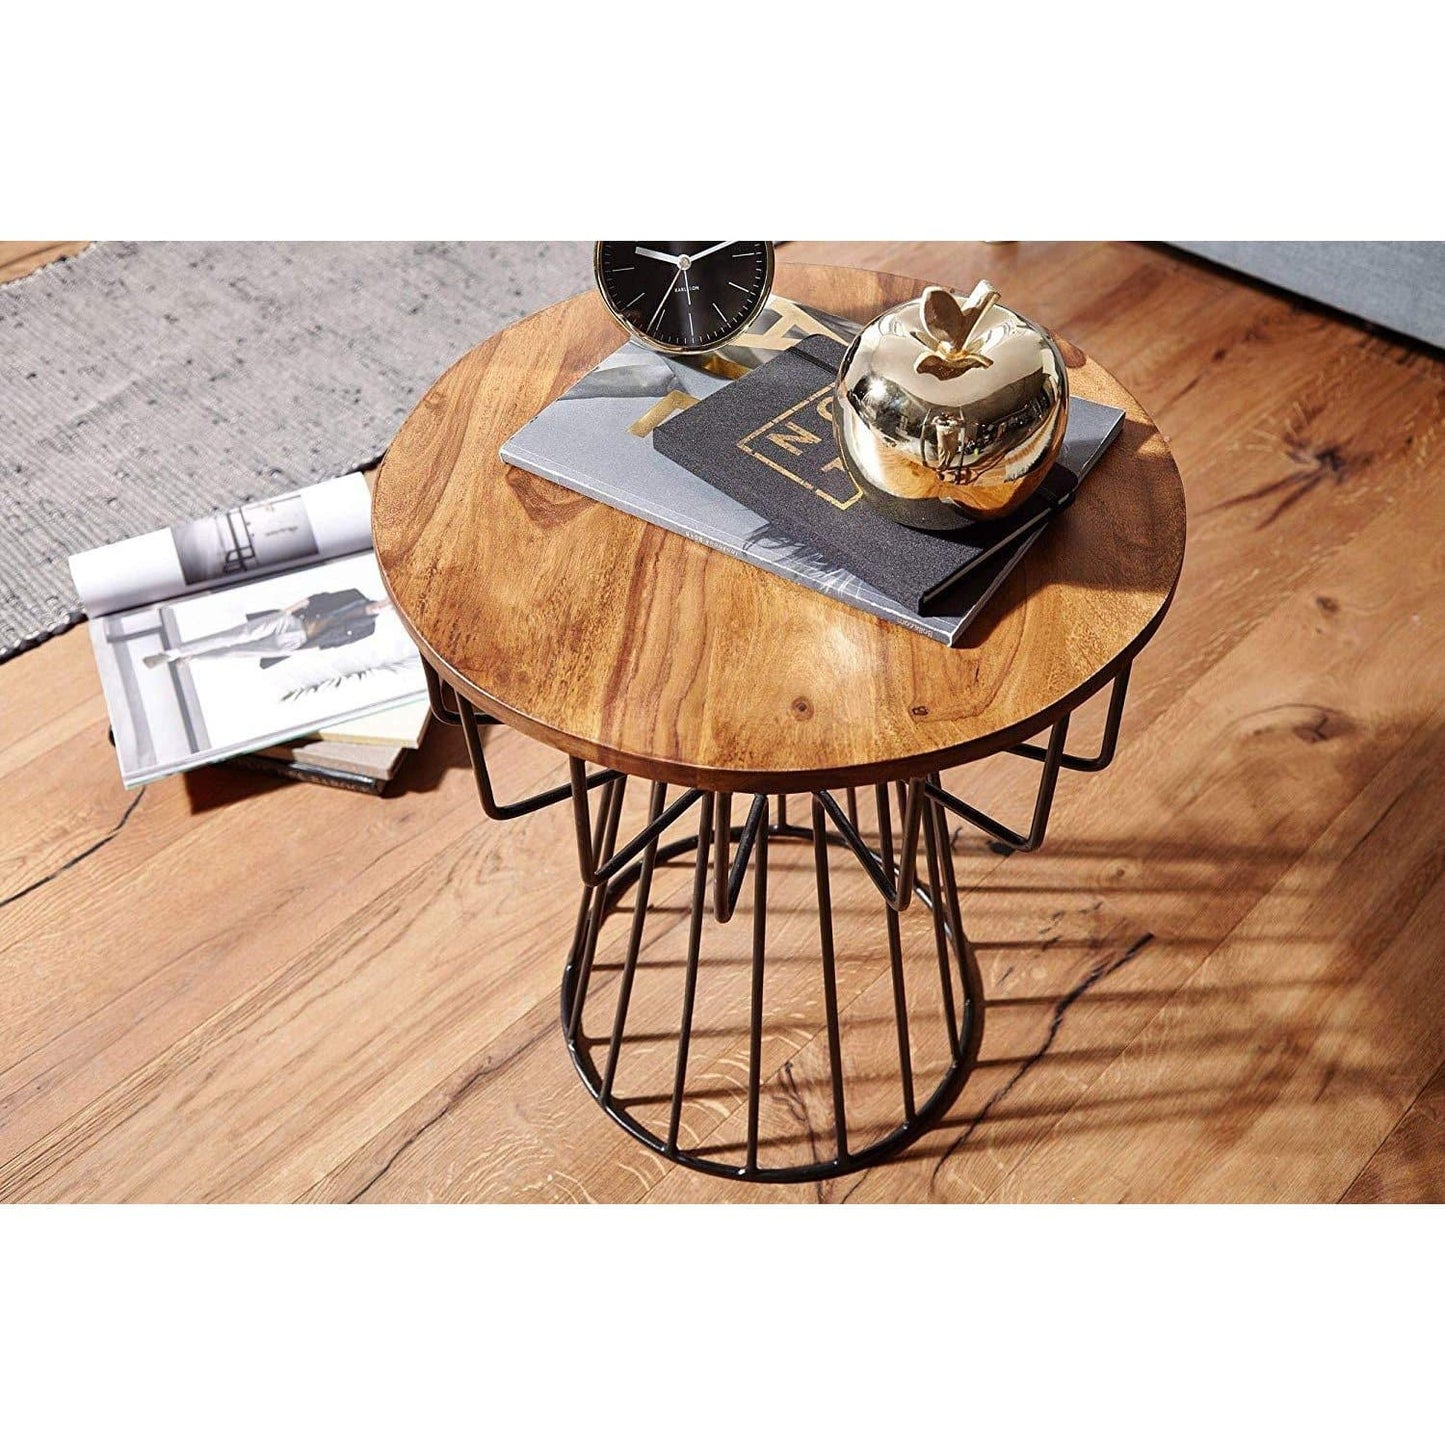 Nancy's Side Tables - Table basse en bois et métal - Tables d'appoint - Marron - 47 x 55 x 47 cm